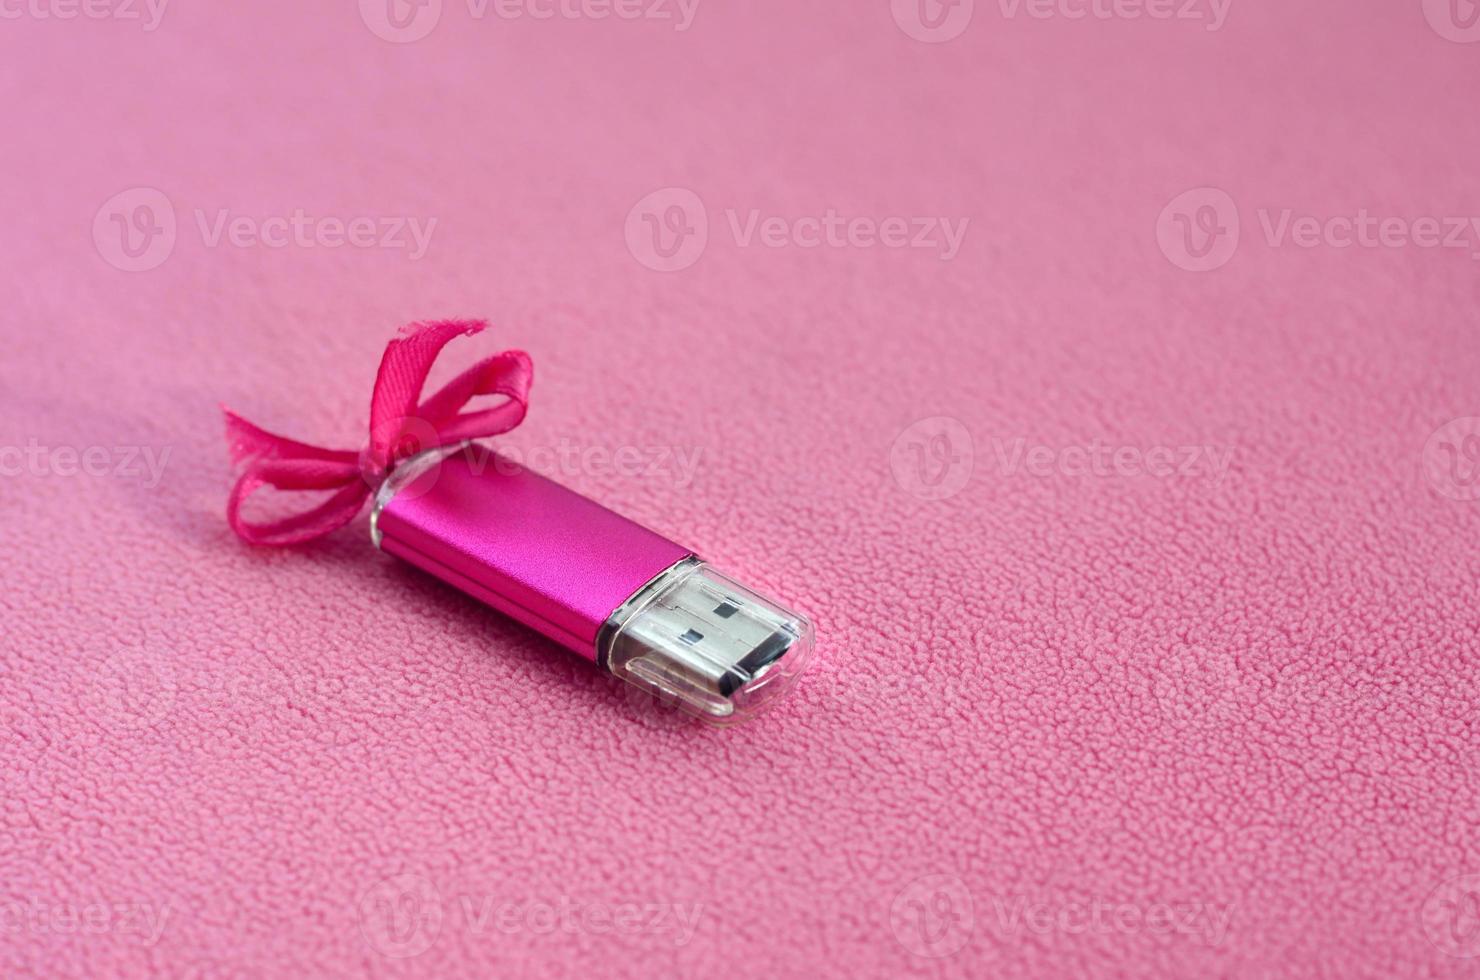 la tarjeta de memoria flash usb de color rosa brillante con un lazo rosa yace sobre una manta de suave y peluda tela de vellón rosa claro. diseño clásico de regalo femenino para una tarjeta de memoria foto